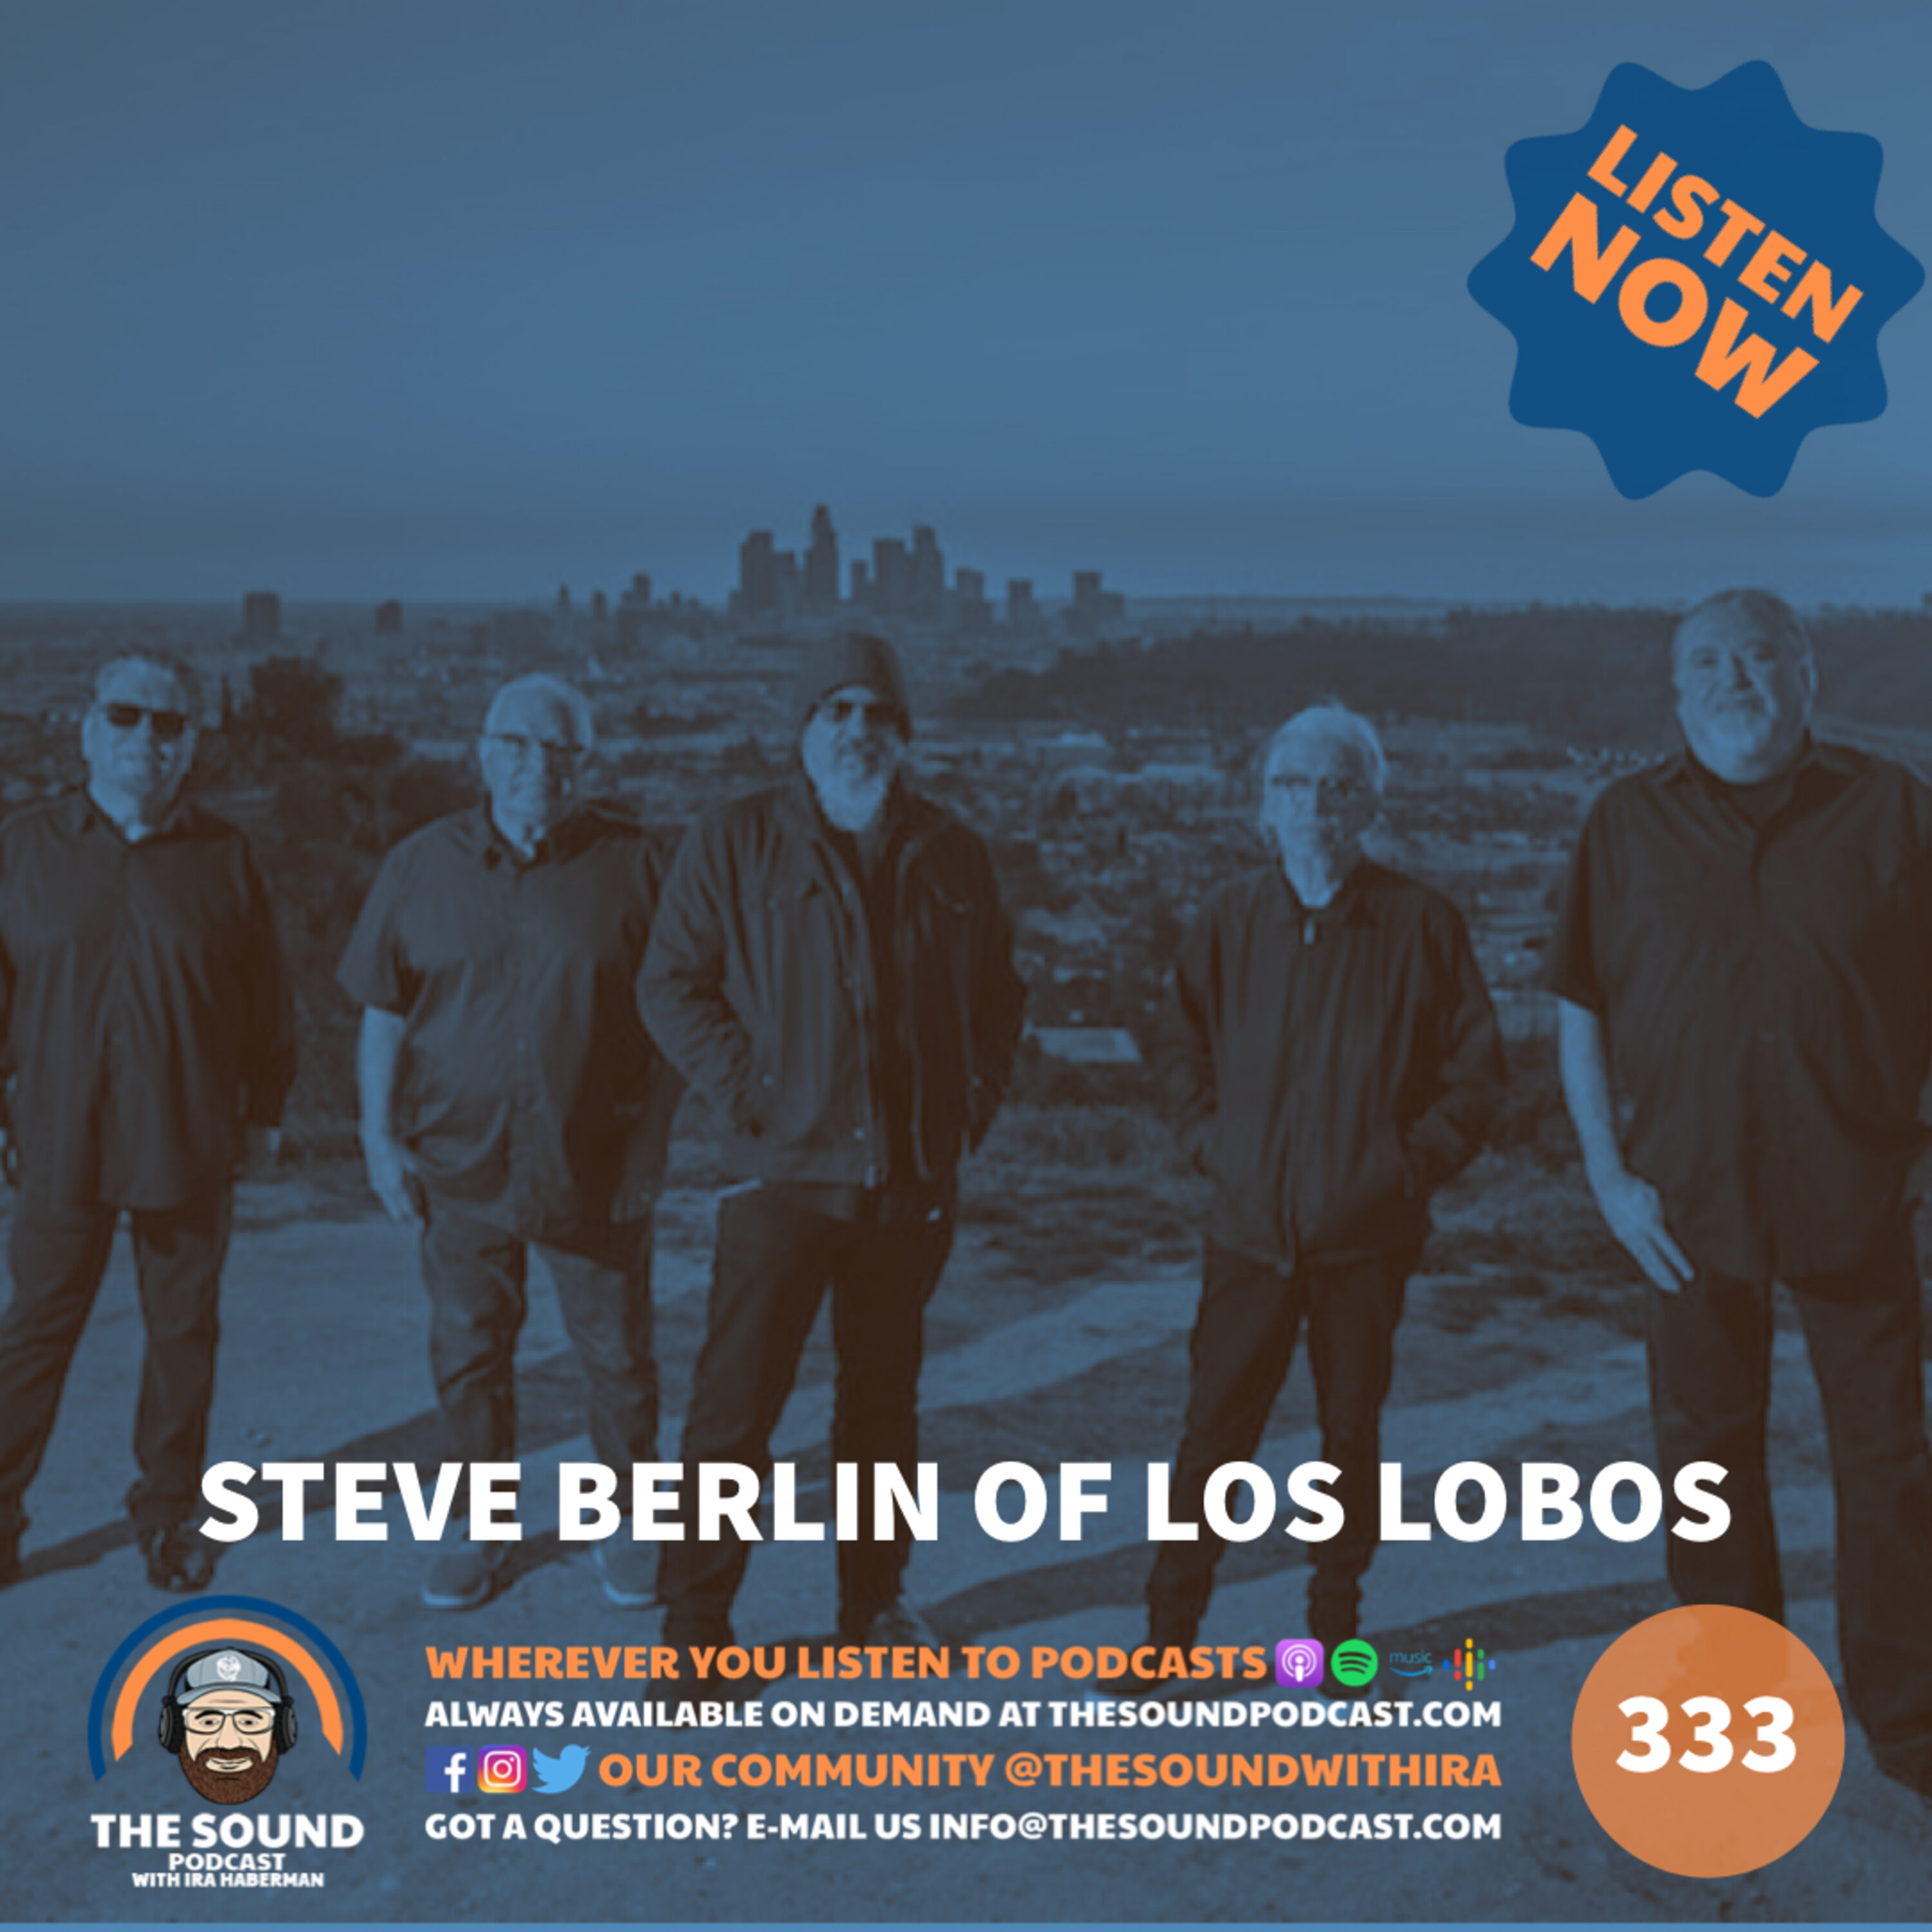 Steve Berlin of Los Lobos Image